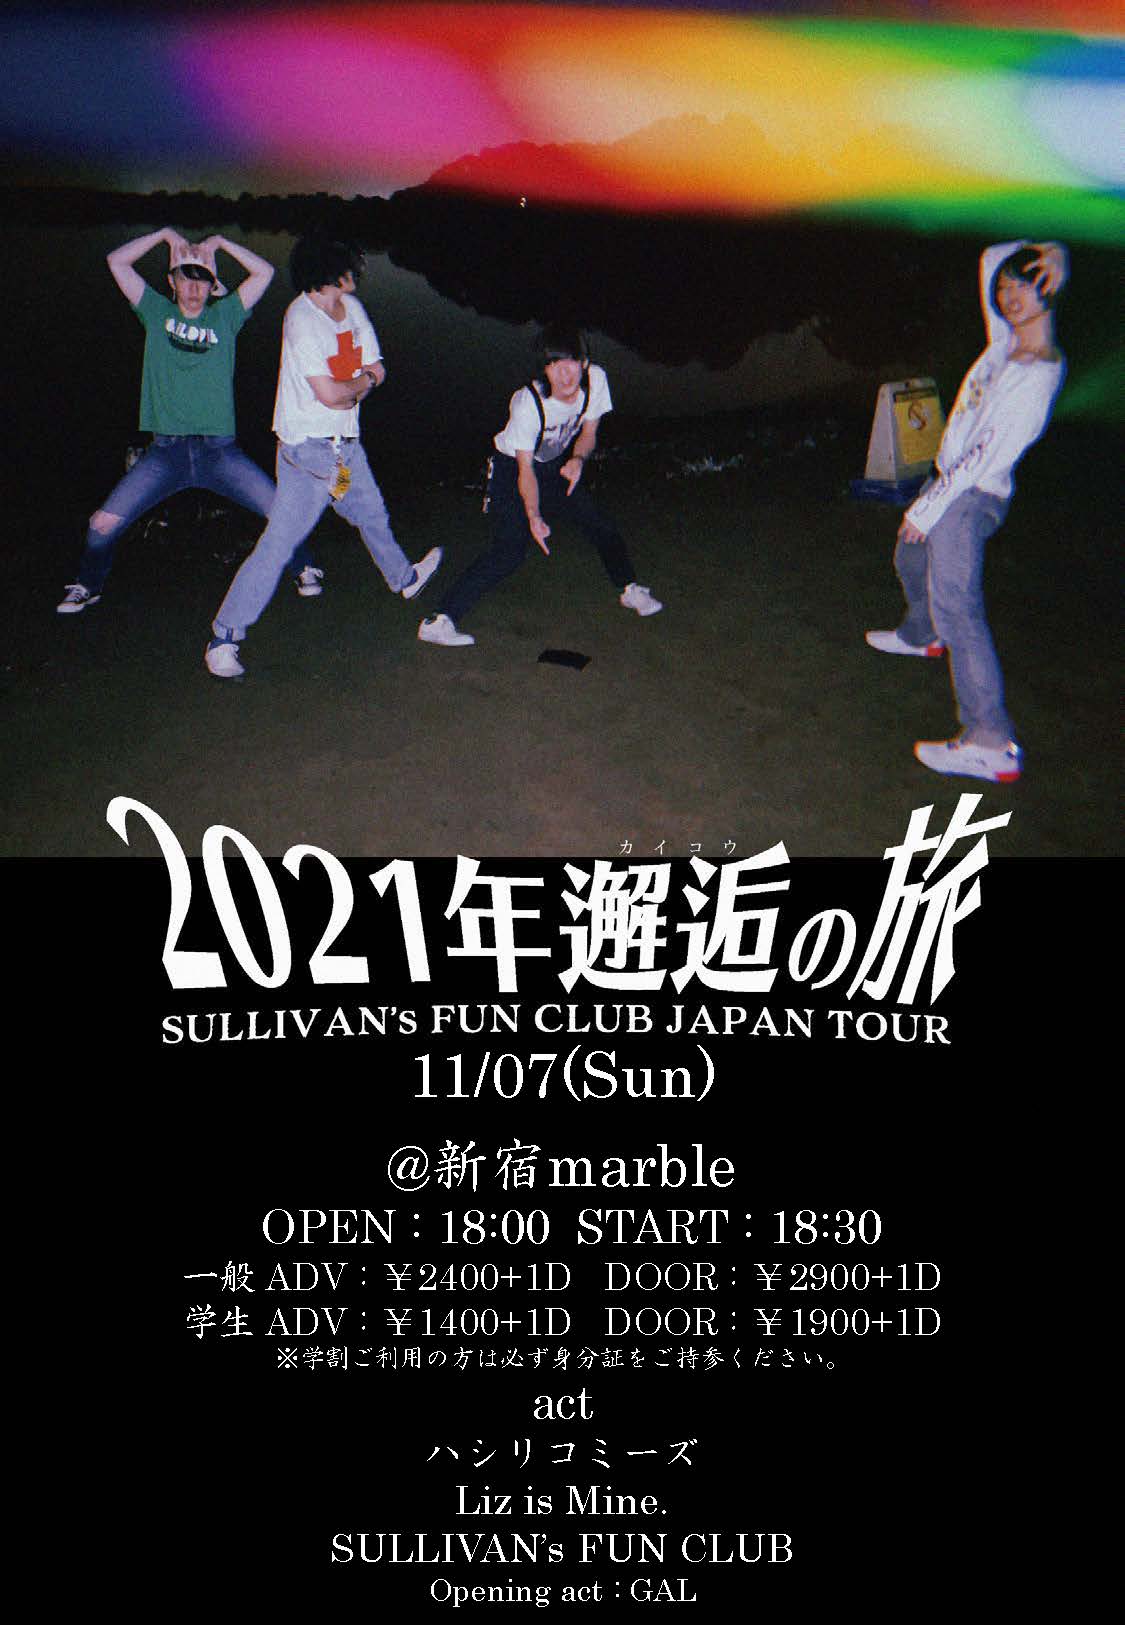 SULLIVAN’s FUN CLUB Panta rhei release tour「2021年邂逅の旅」東京編